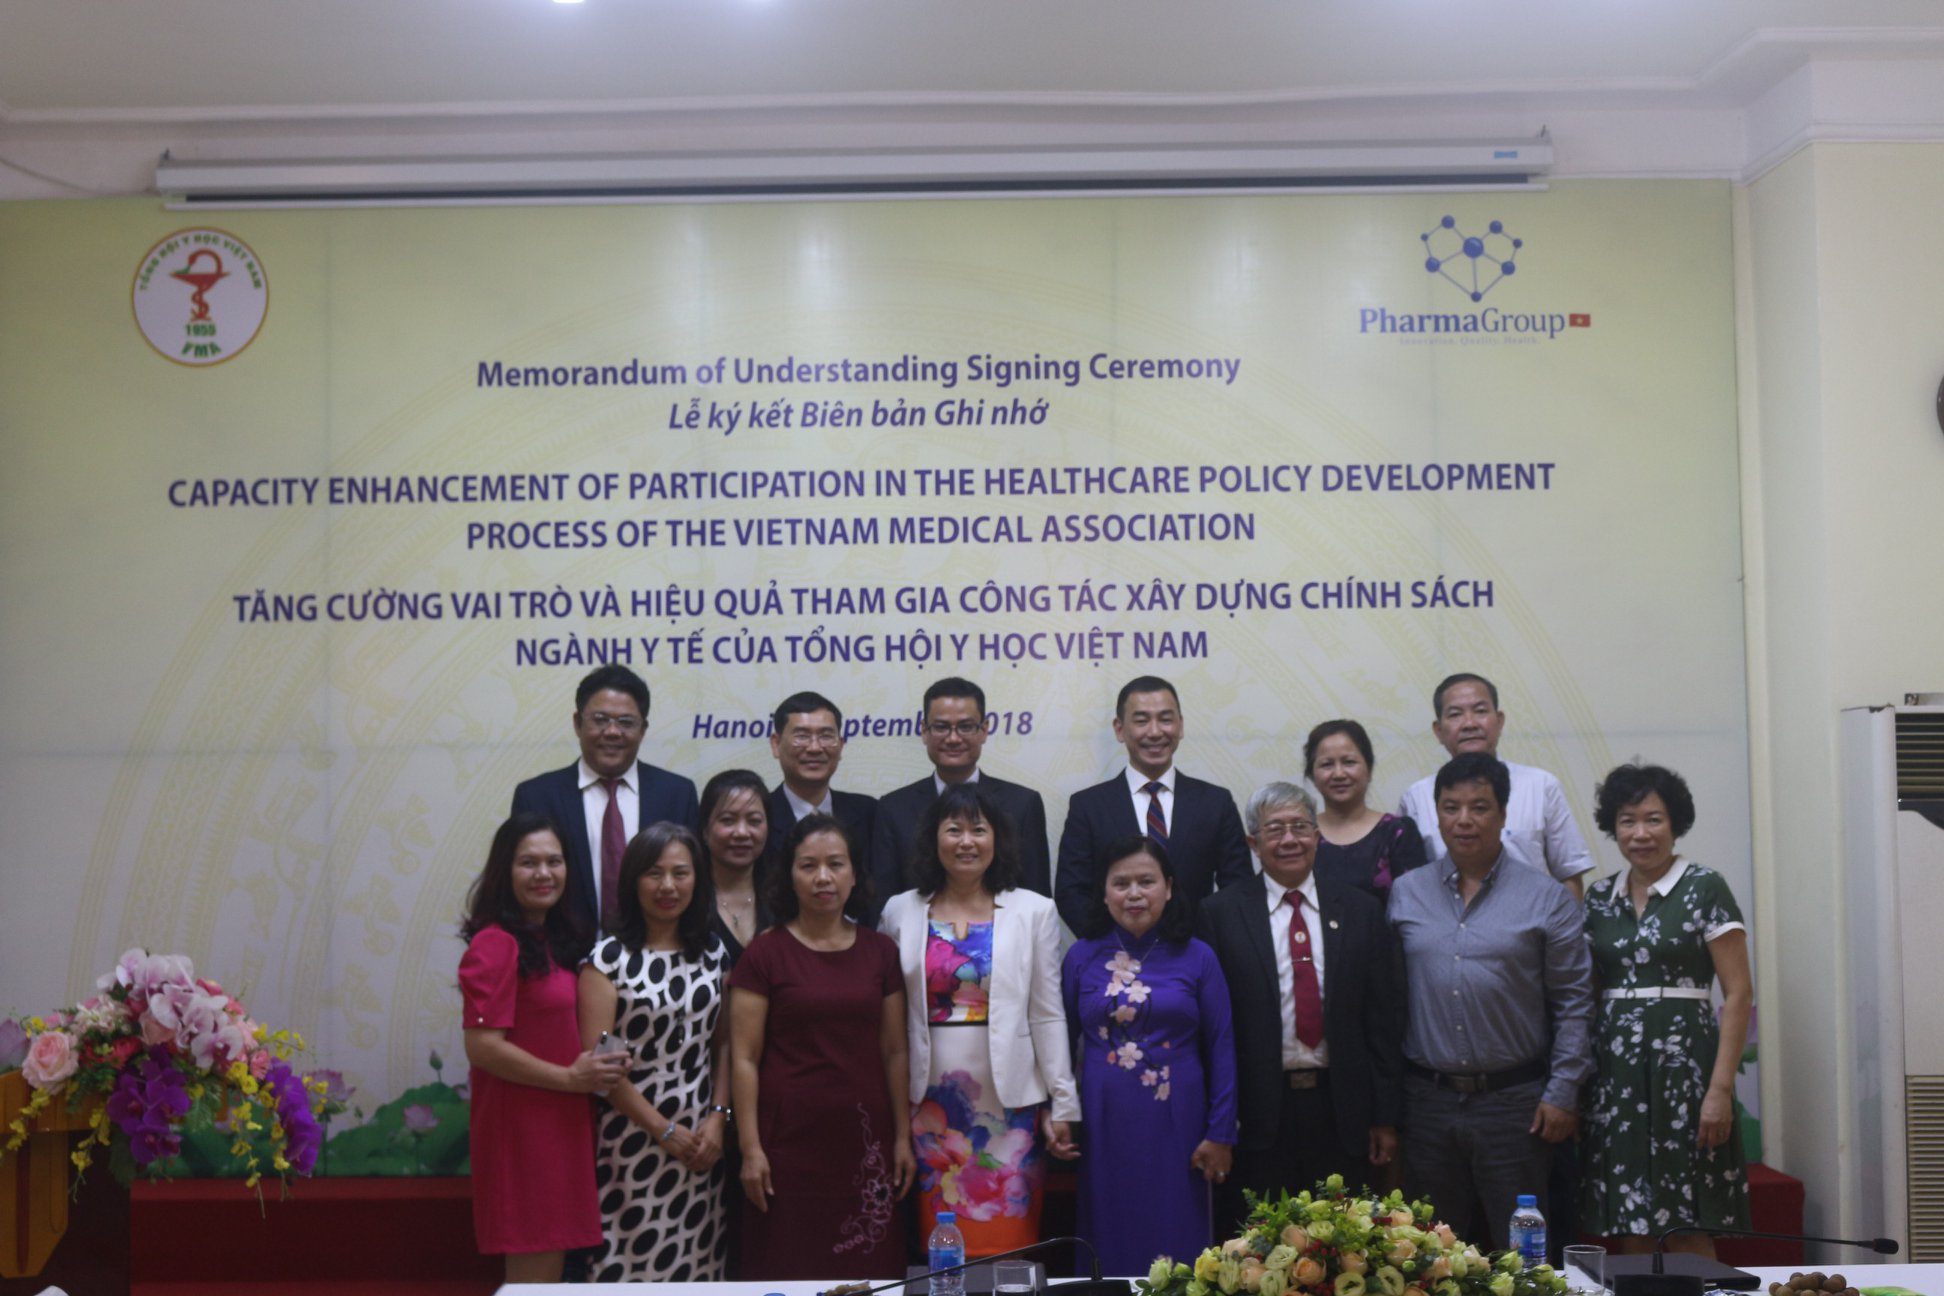 Tổng hội Y học Việt Nam và Pharma Group ký kết “Biên bản ghi nhớ tăng cường xây dựng chính sách Y tế Việt Nam”